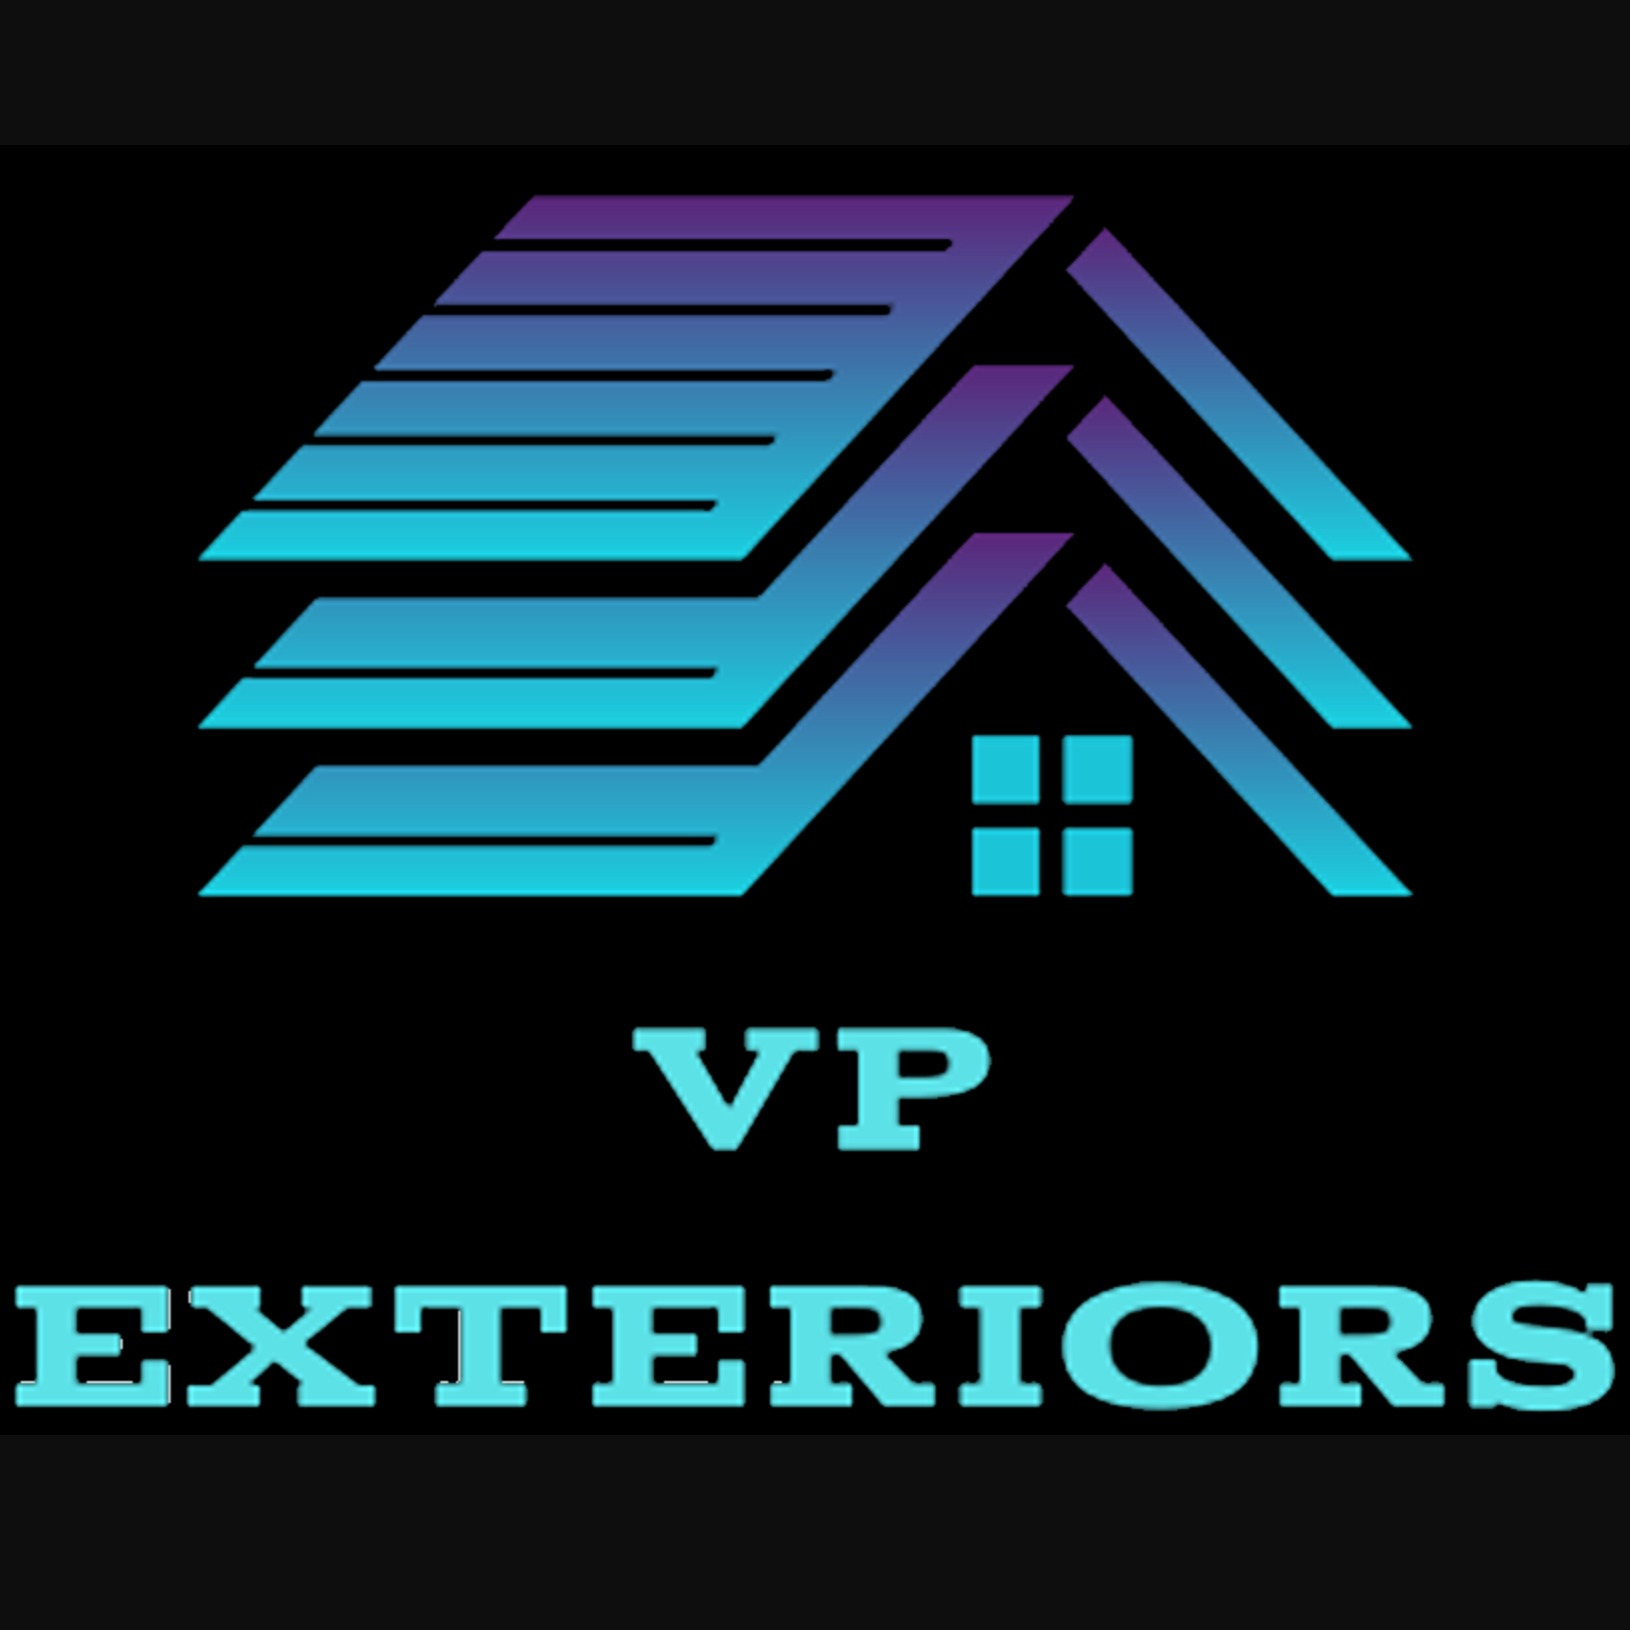 VP Exteriors LLC - Indianapolis, IN 46201 - (317)203-9501 | ShowMeLocal.com